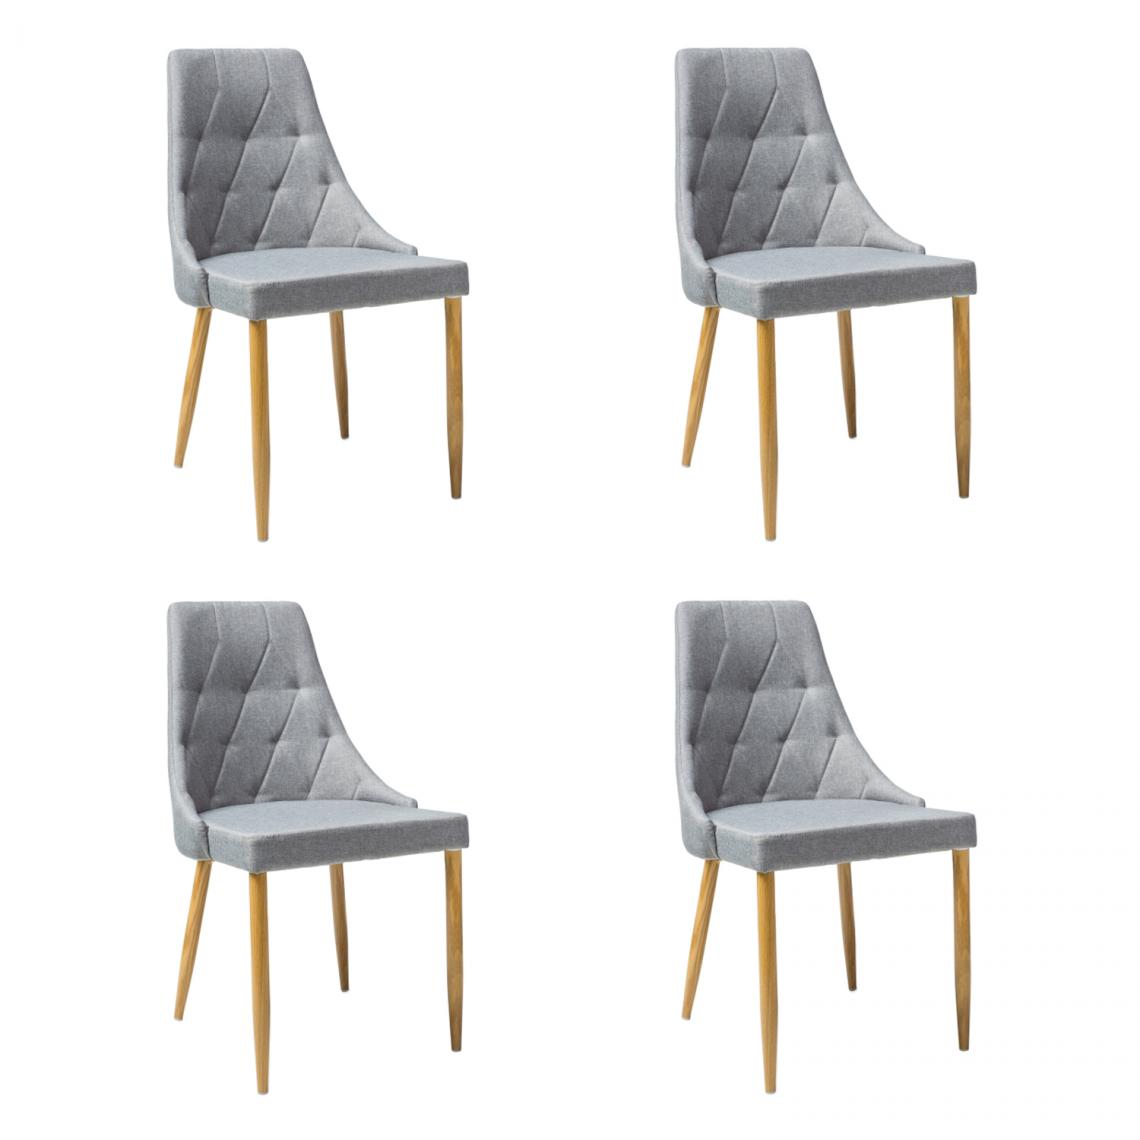 Hucoco - TRIO - Lot de 4 chaises - Style scandinave - 90x50x46 cm - Rembourrée en tissu - Structure en métal - Gris - Chaises